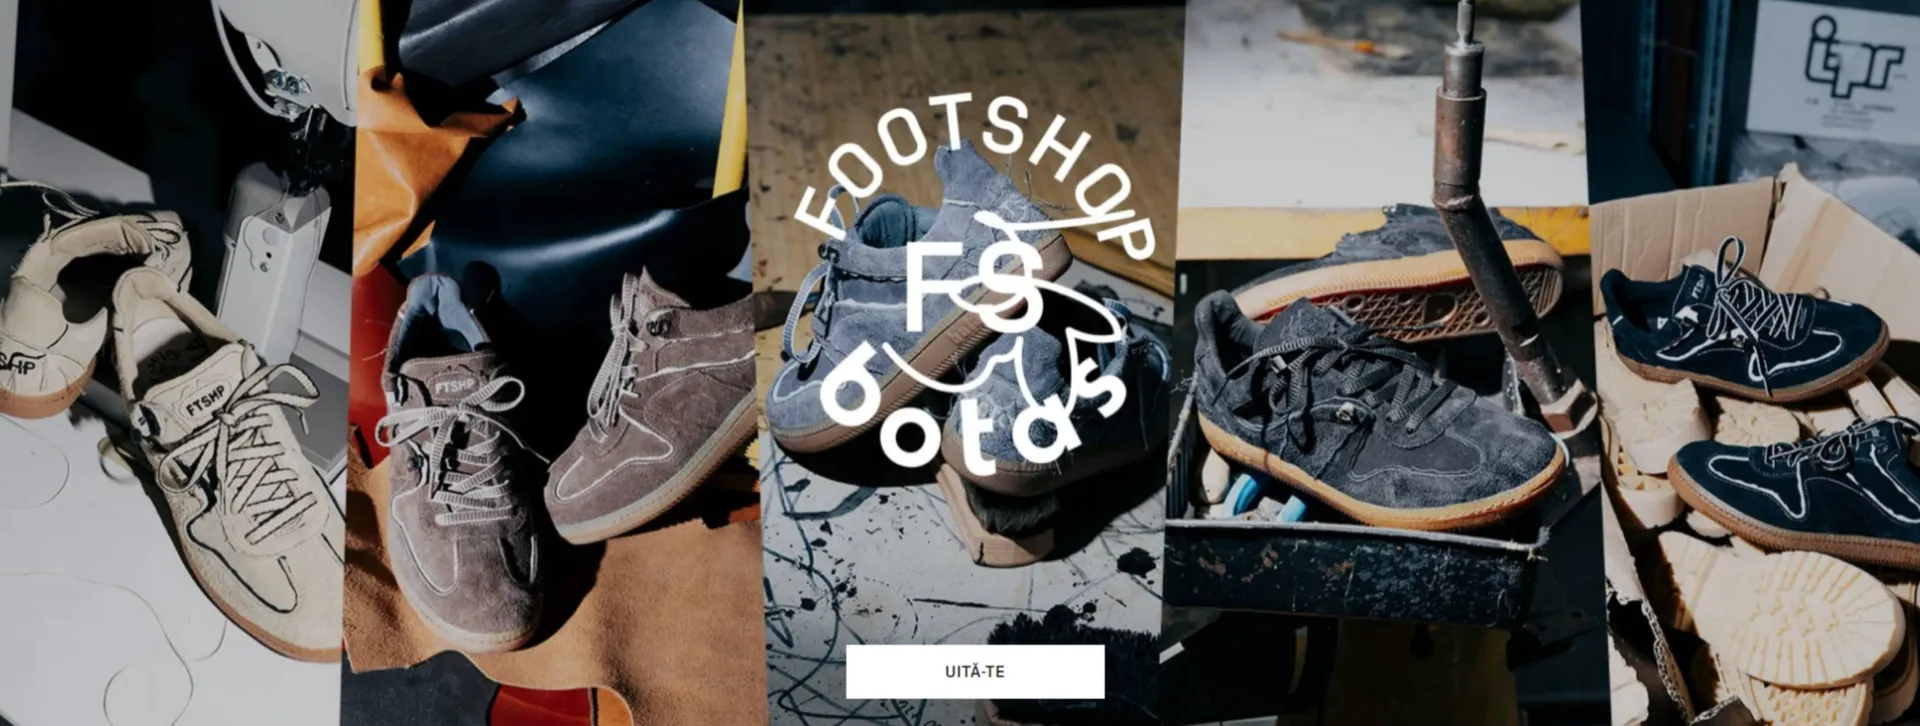 Footshop catalog - 1